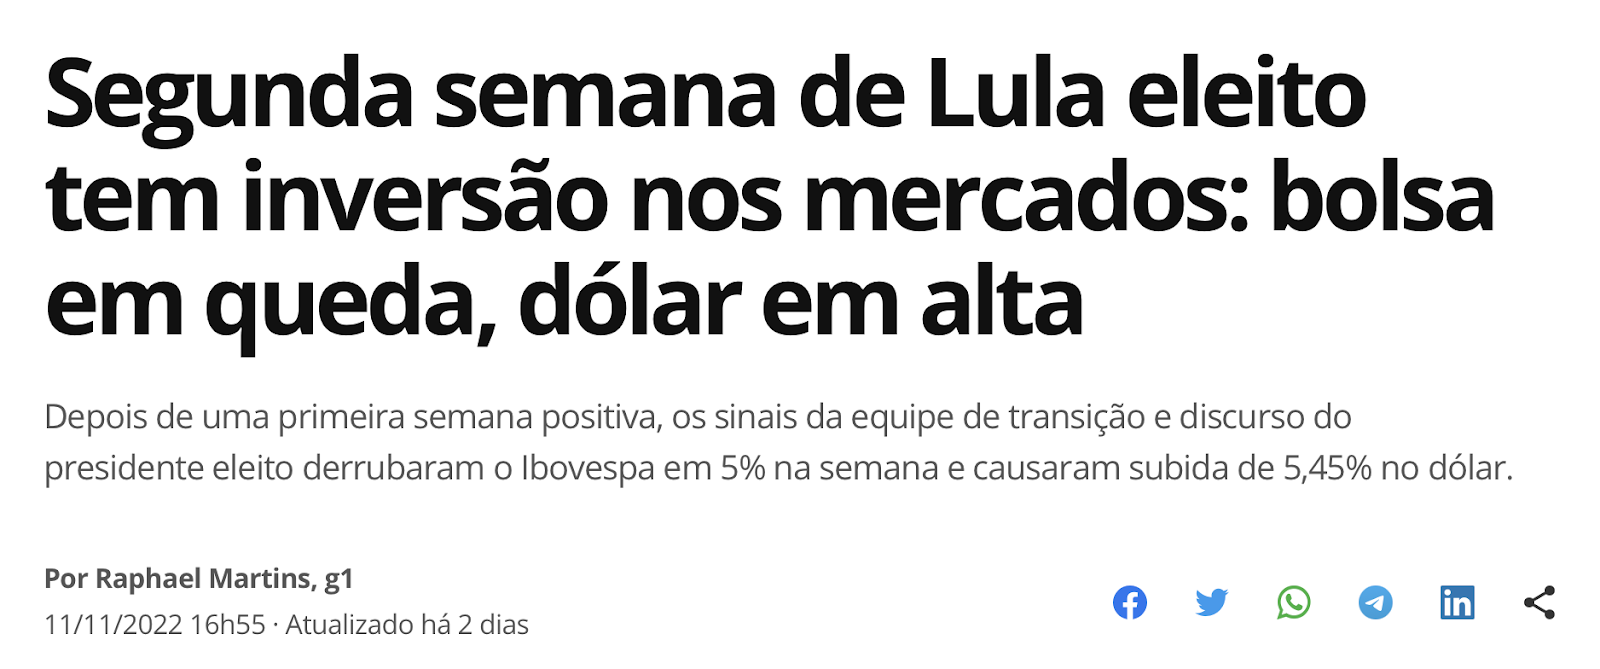 Manchete do g1: "Segunda semana de Lula eleito tem inversão nos mercados: bolsa em queda, dólar em alta"